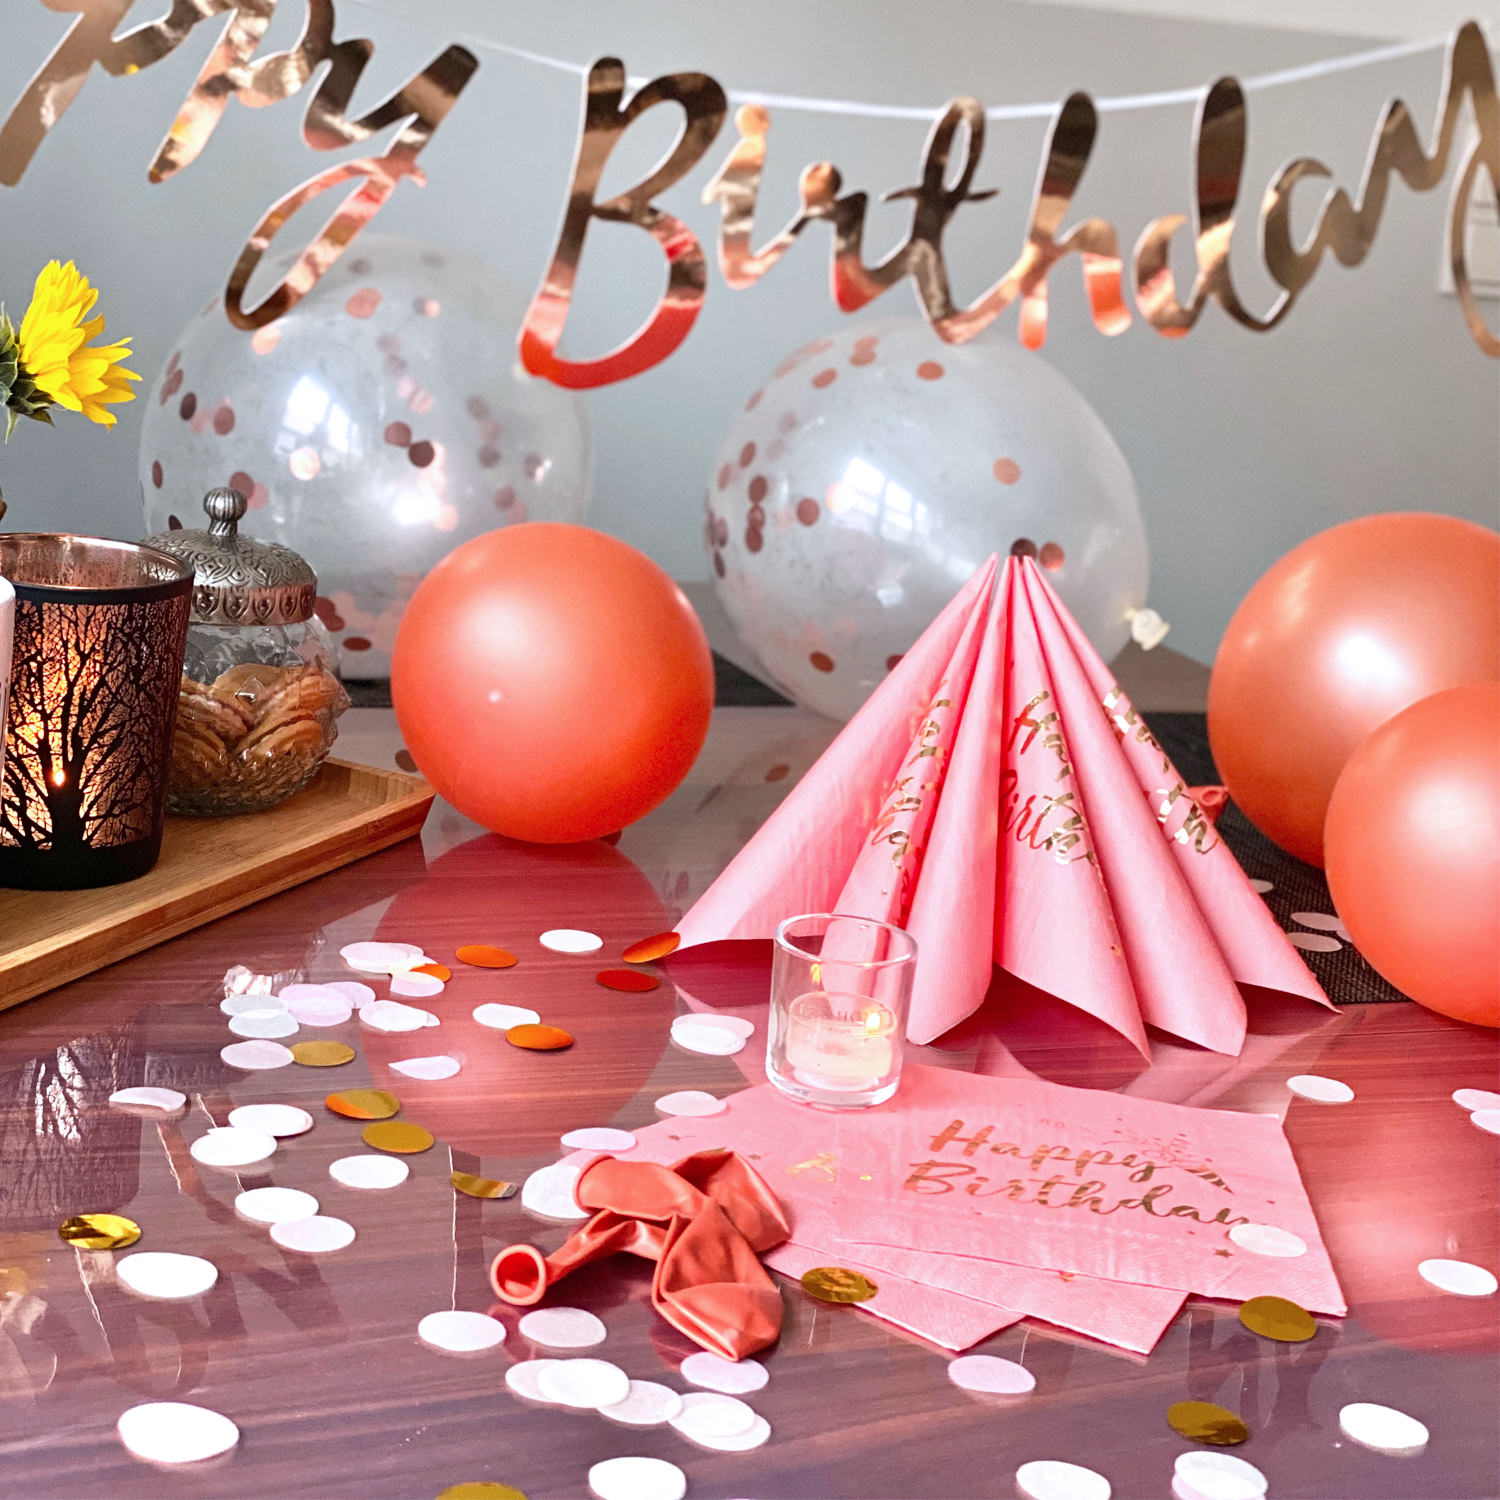 Happy Birthday Geburtstag Deko  28tlg Girlande Luftballons Konfetti Servietten